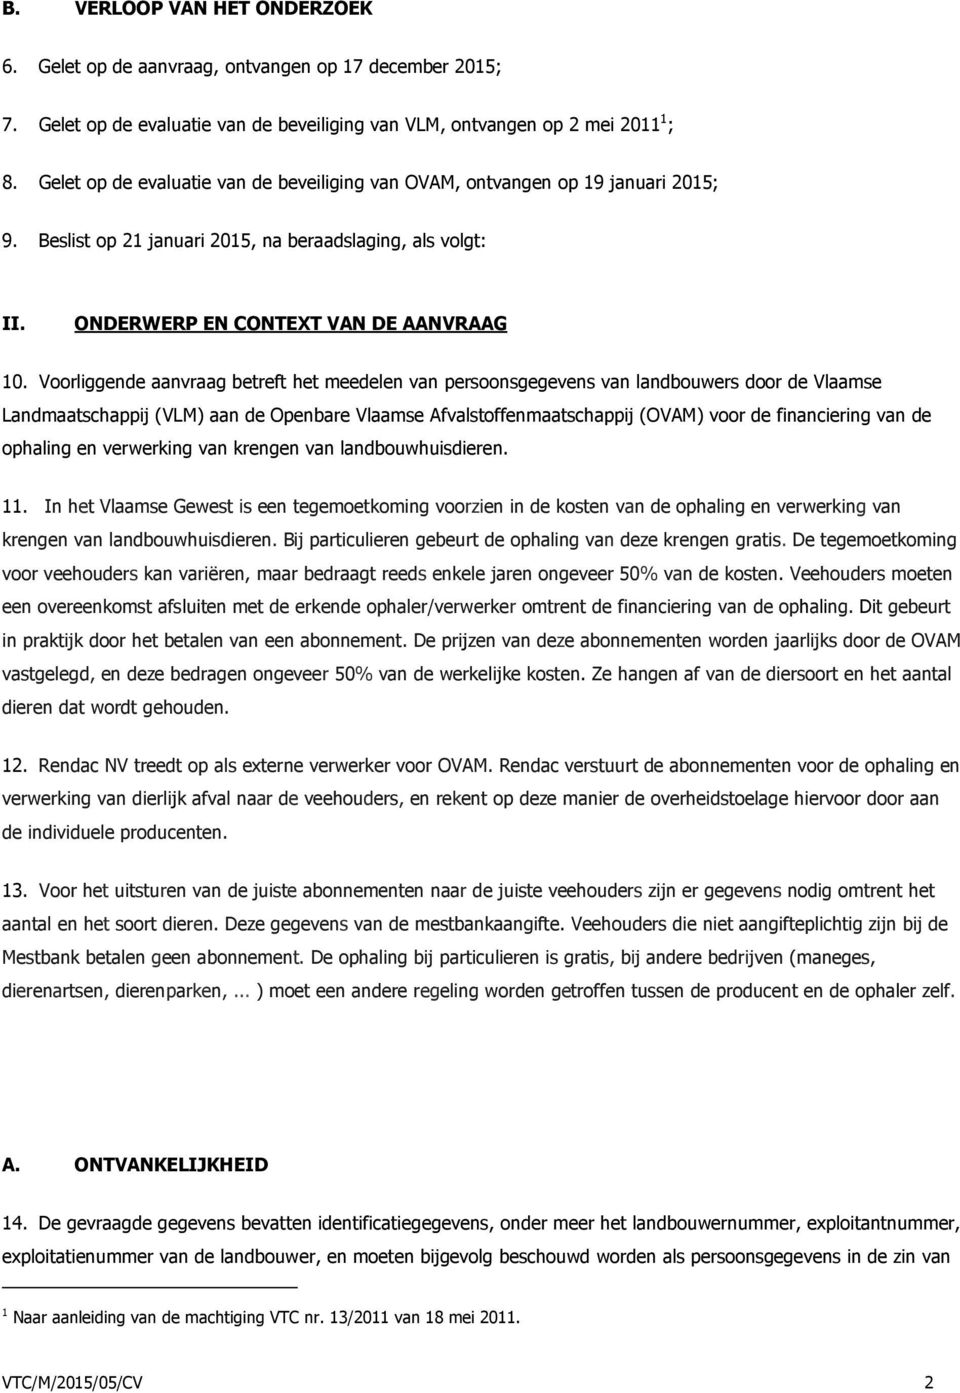 Voorliggende aanvraag betreft het meedelen van persoonsgegevens van landbouwers door de Vlaamse Landmaatschappij (VLM) aan de Openbare Vlaamse Afvalstoffenmaatschappij (OVAM) voor de financiering van